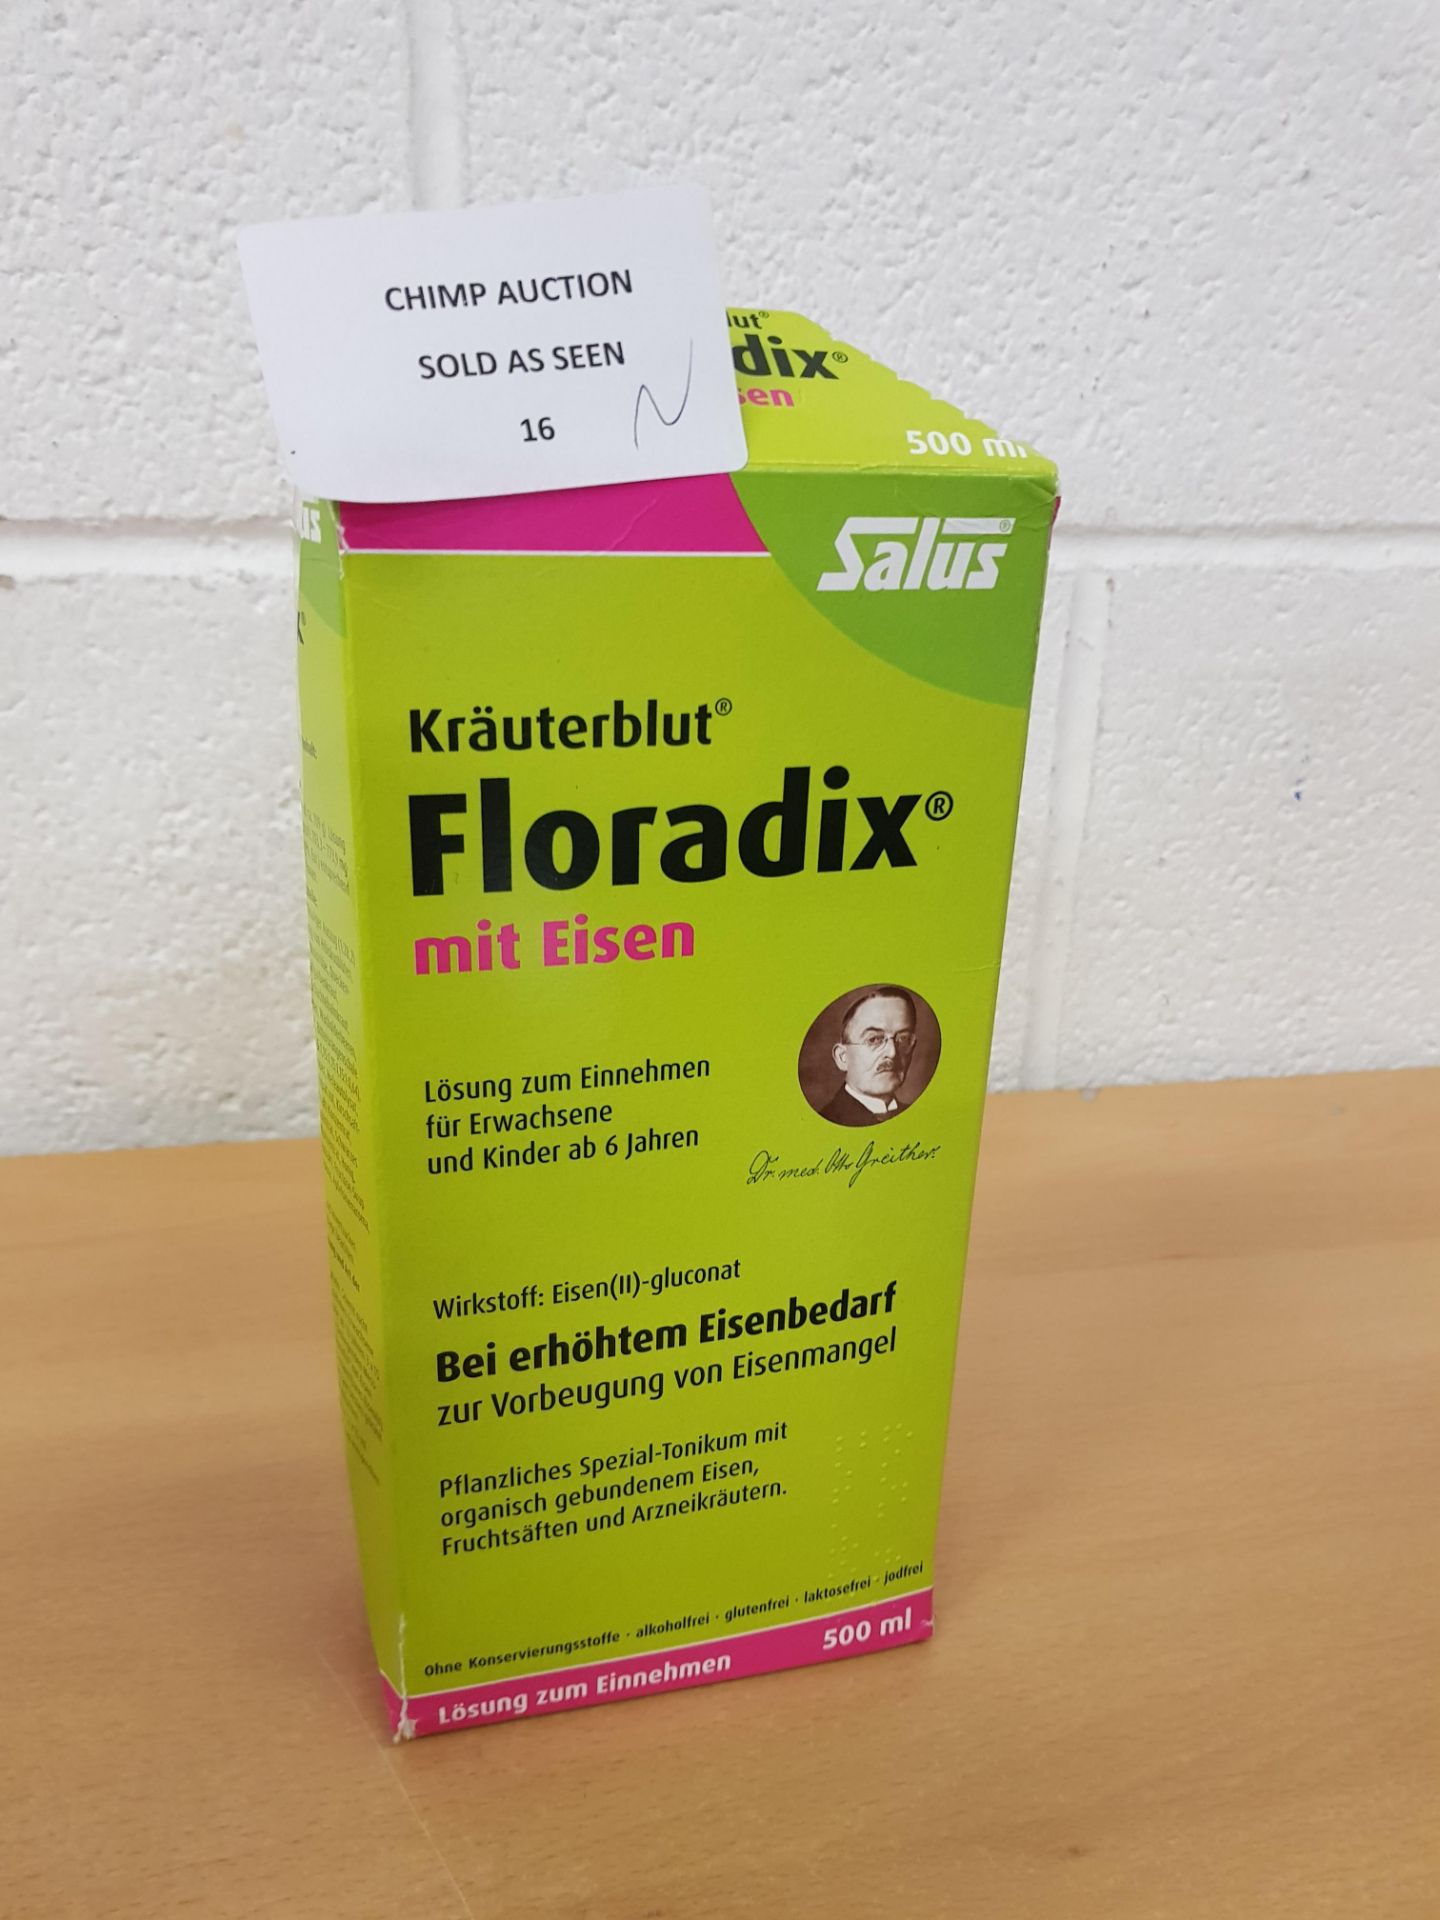 Brand new Floradix mit Eisen Kräuterblut Saft, 500ml by Salus £30